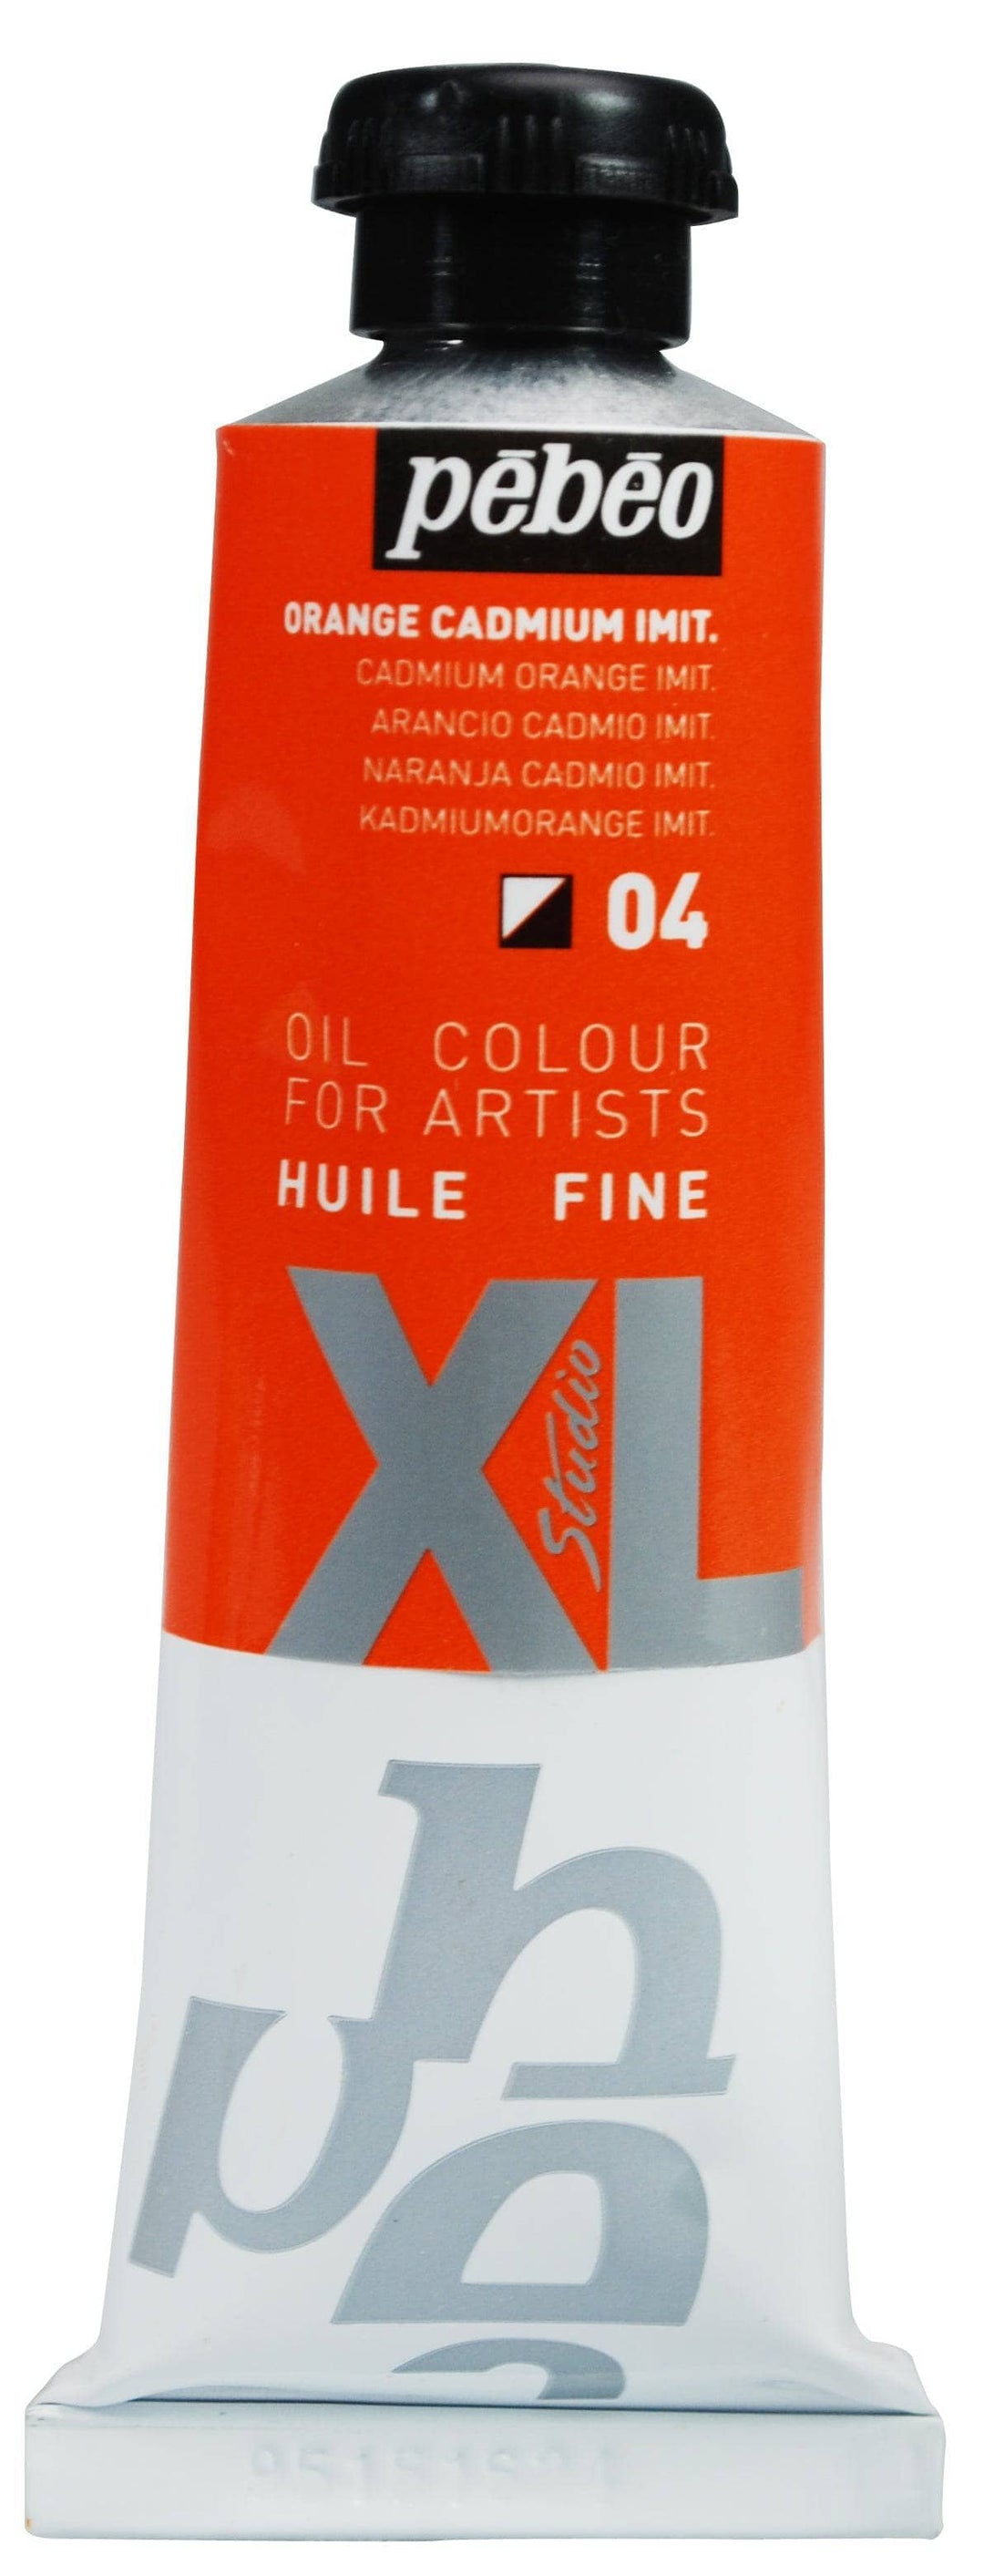 Huile fine Studio XL 37ml - Orange Cadmium Imit.
PB937004